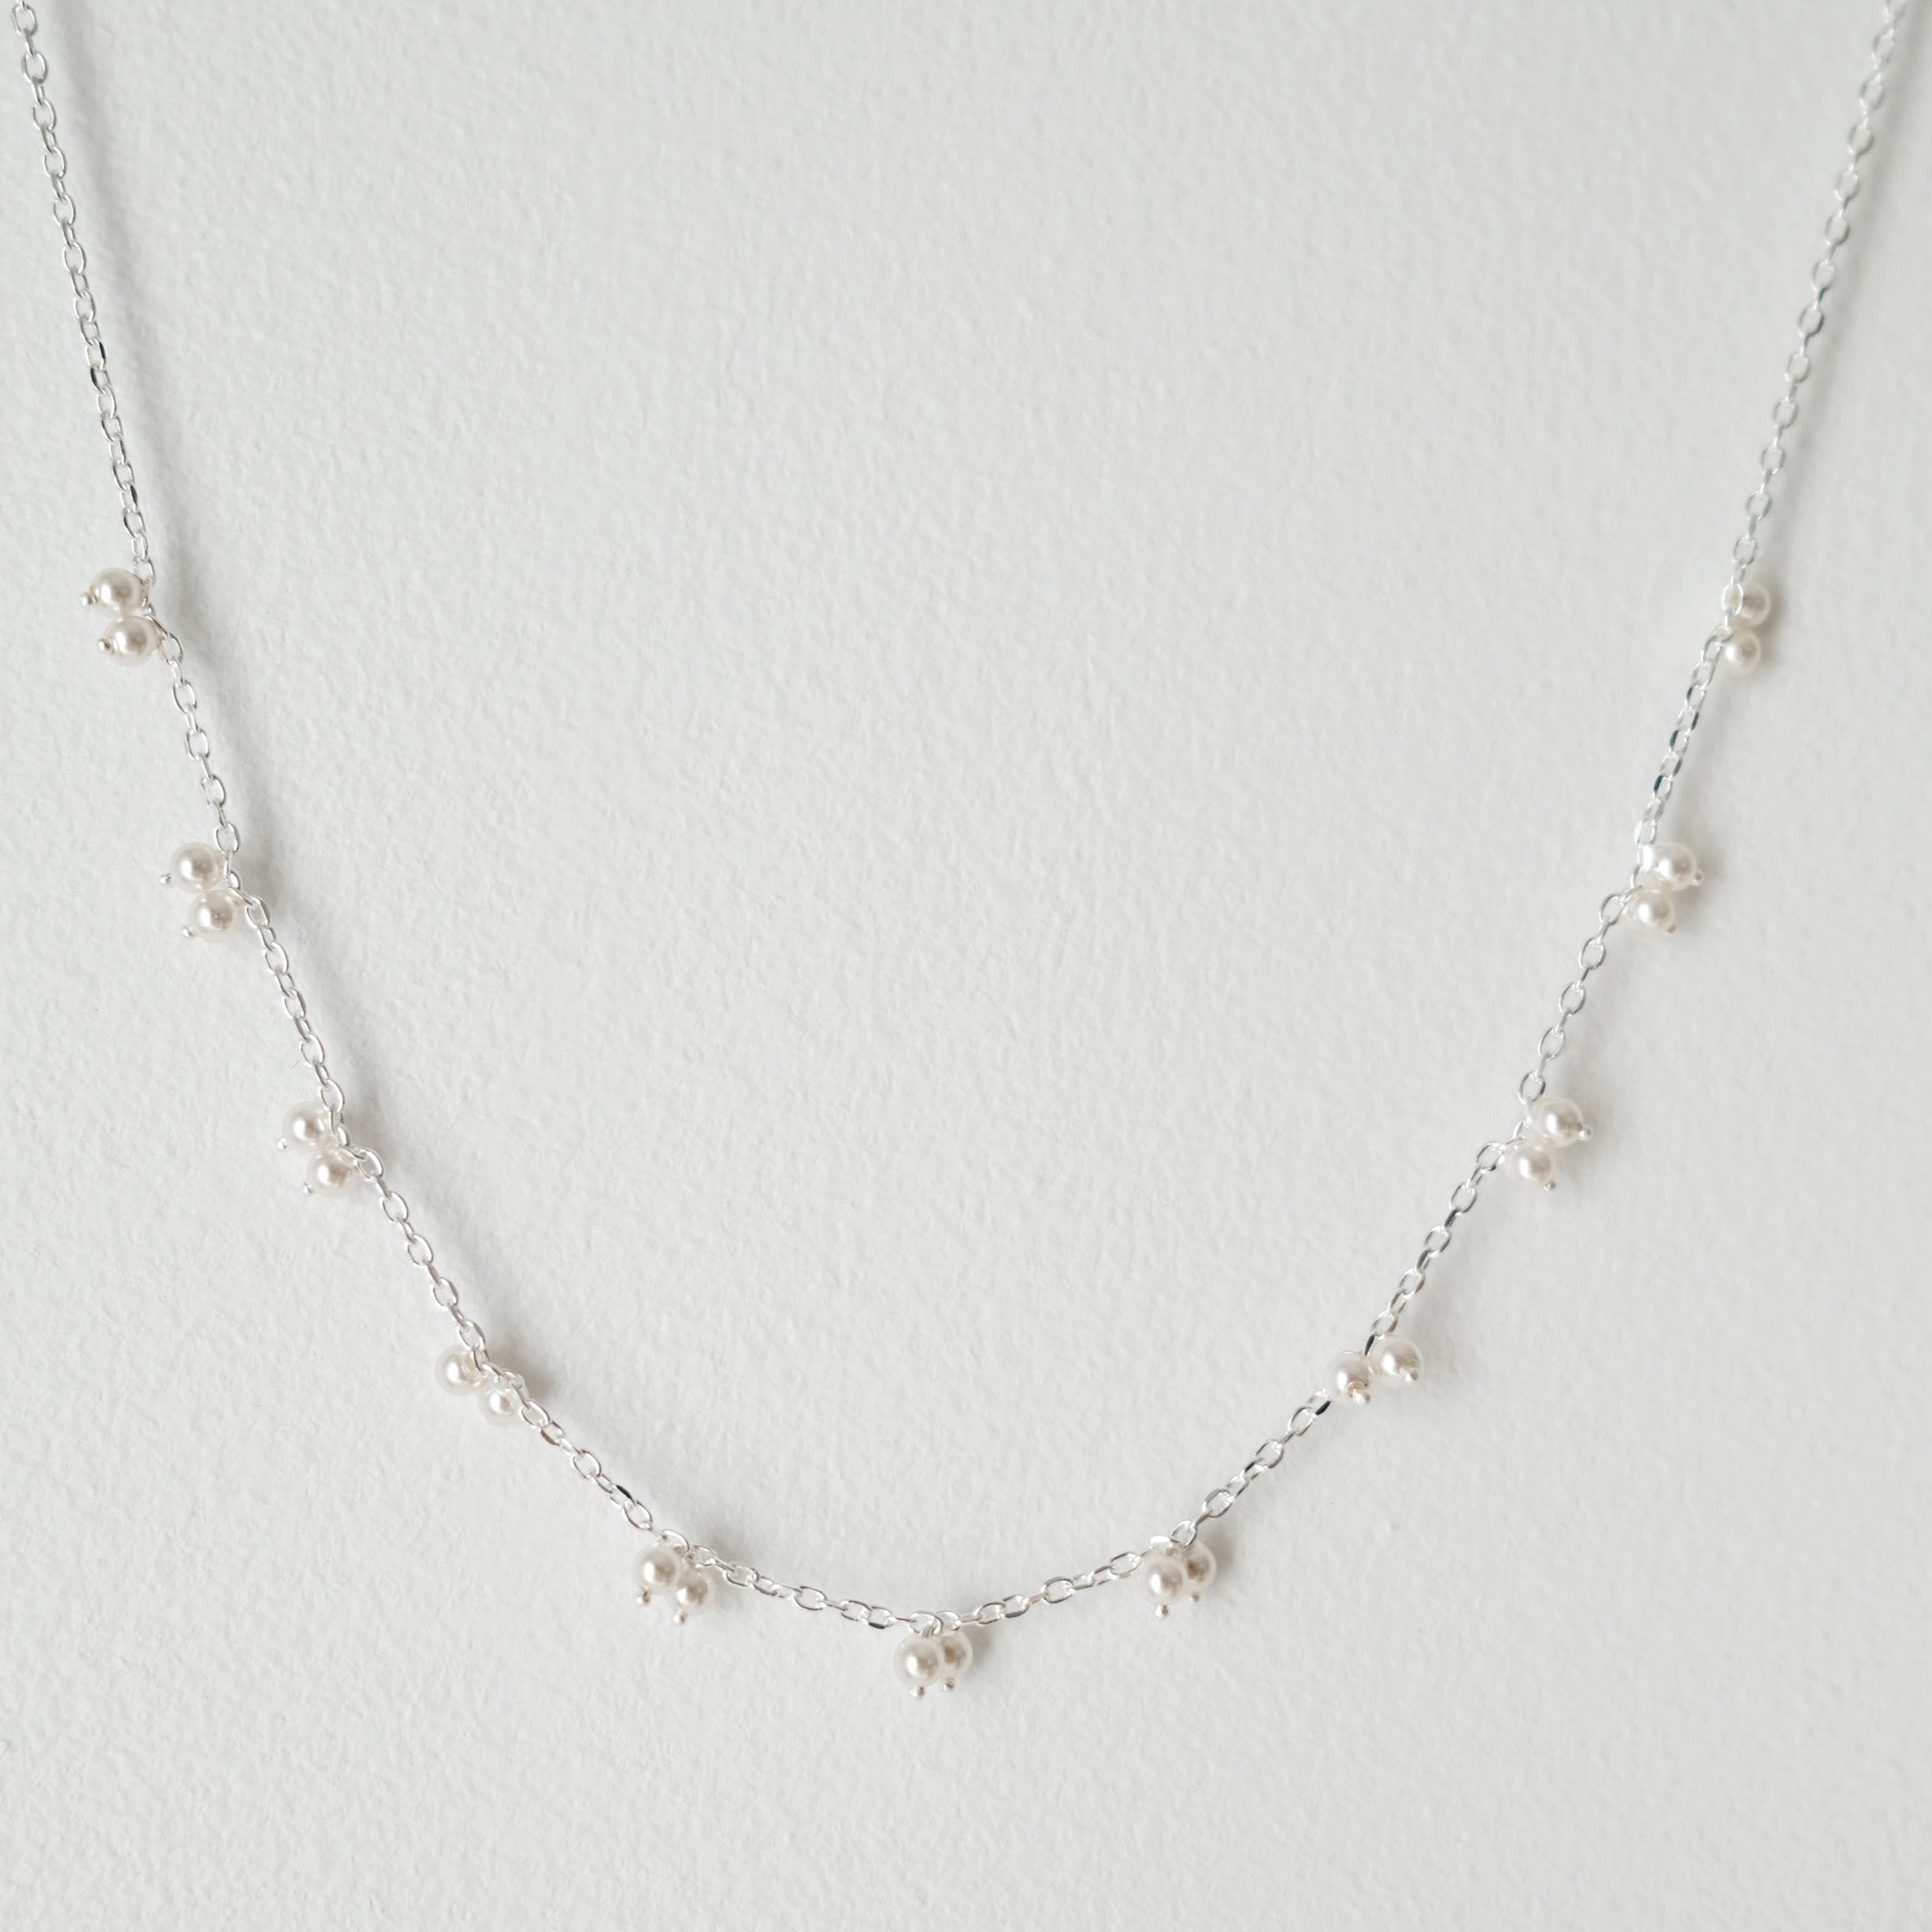 Mia's Petite Pearl Necklace